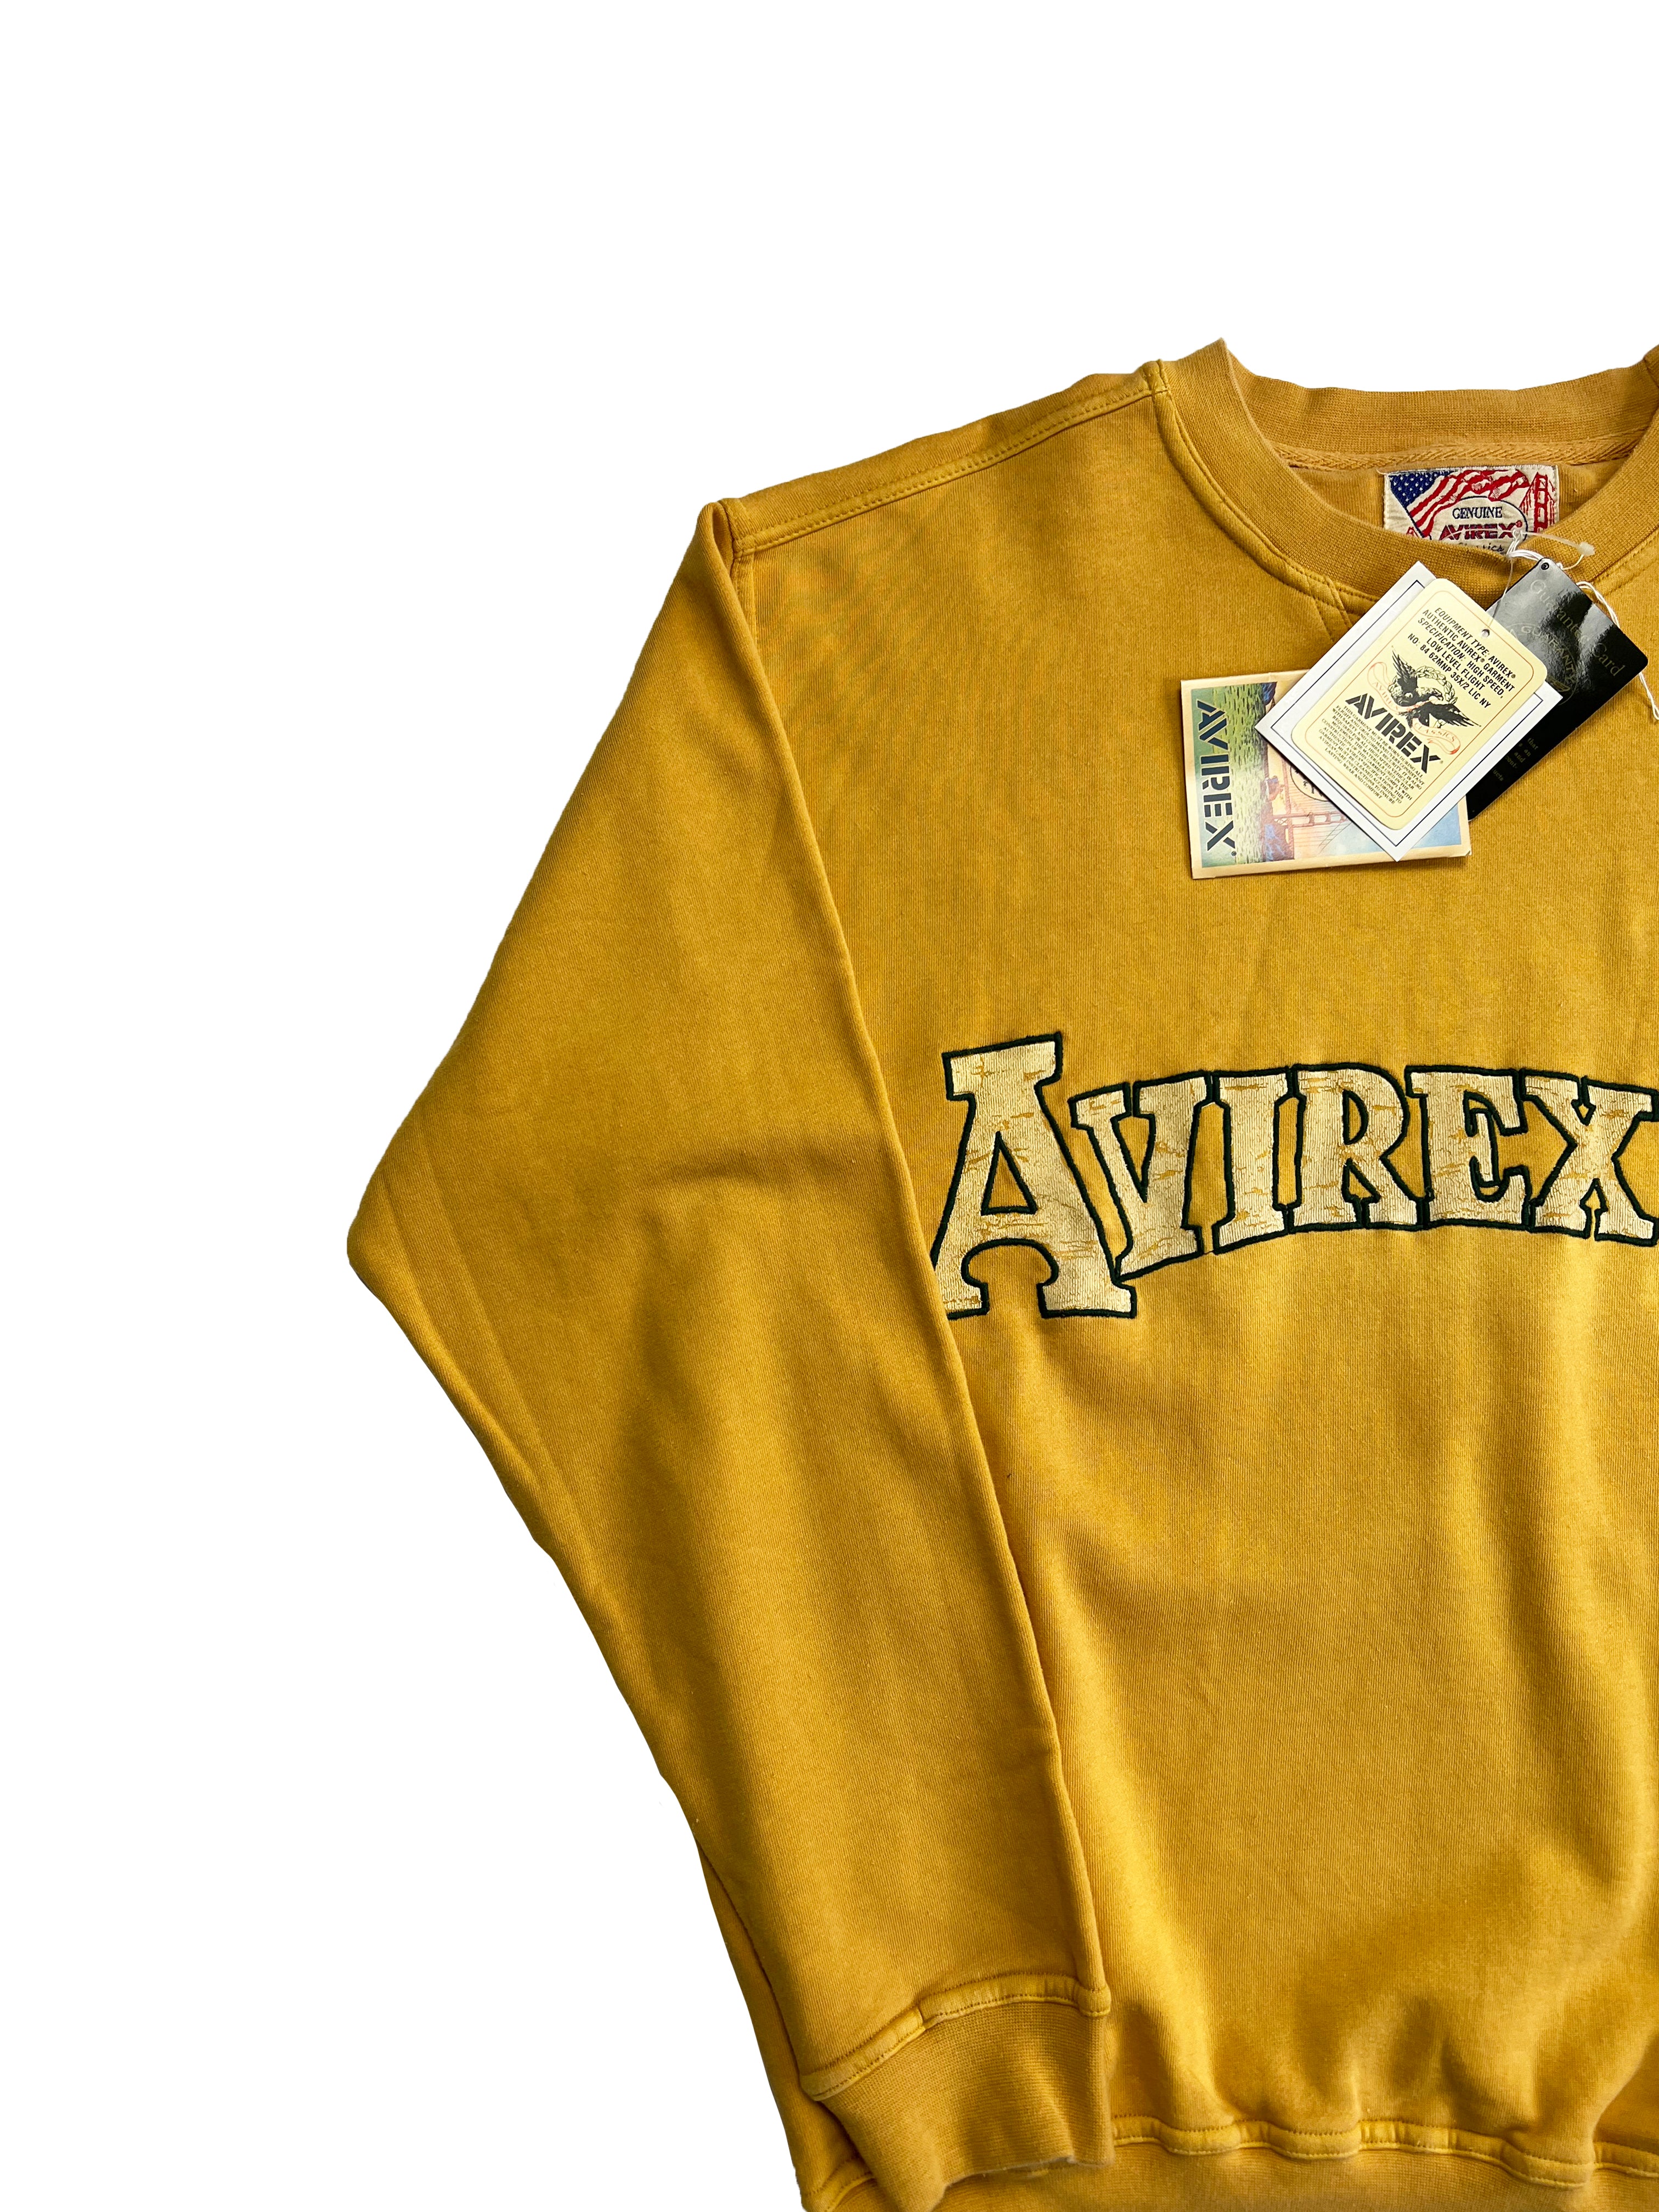 Avirex Yellow Sweatshirt BNWT 90's